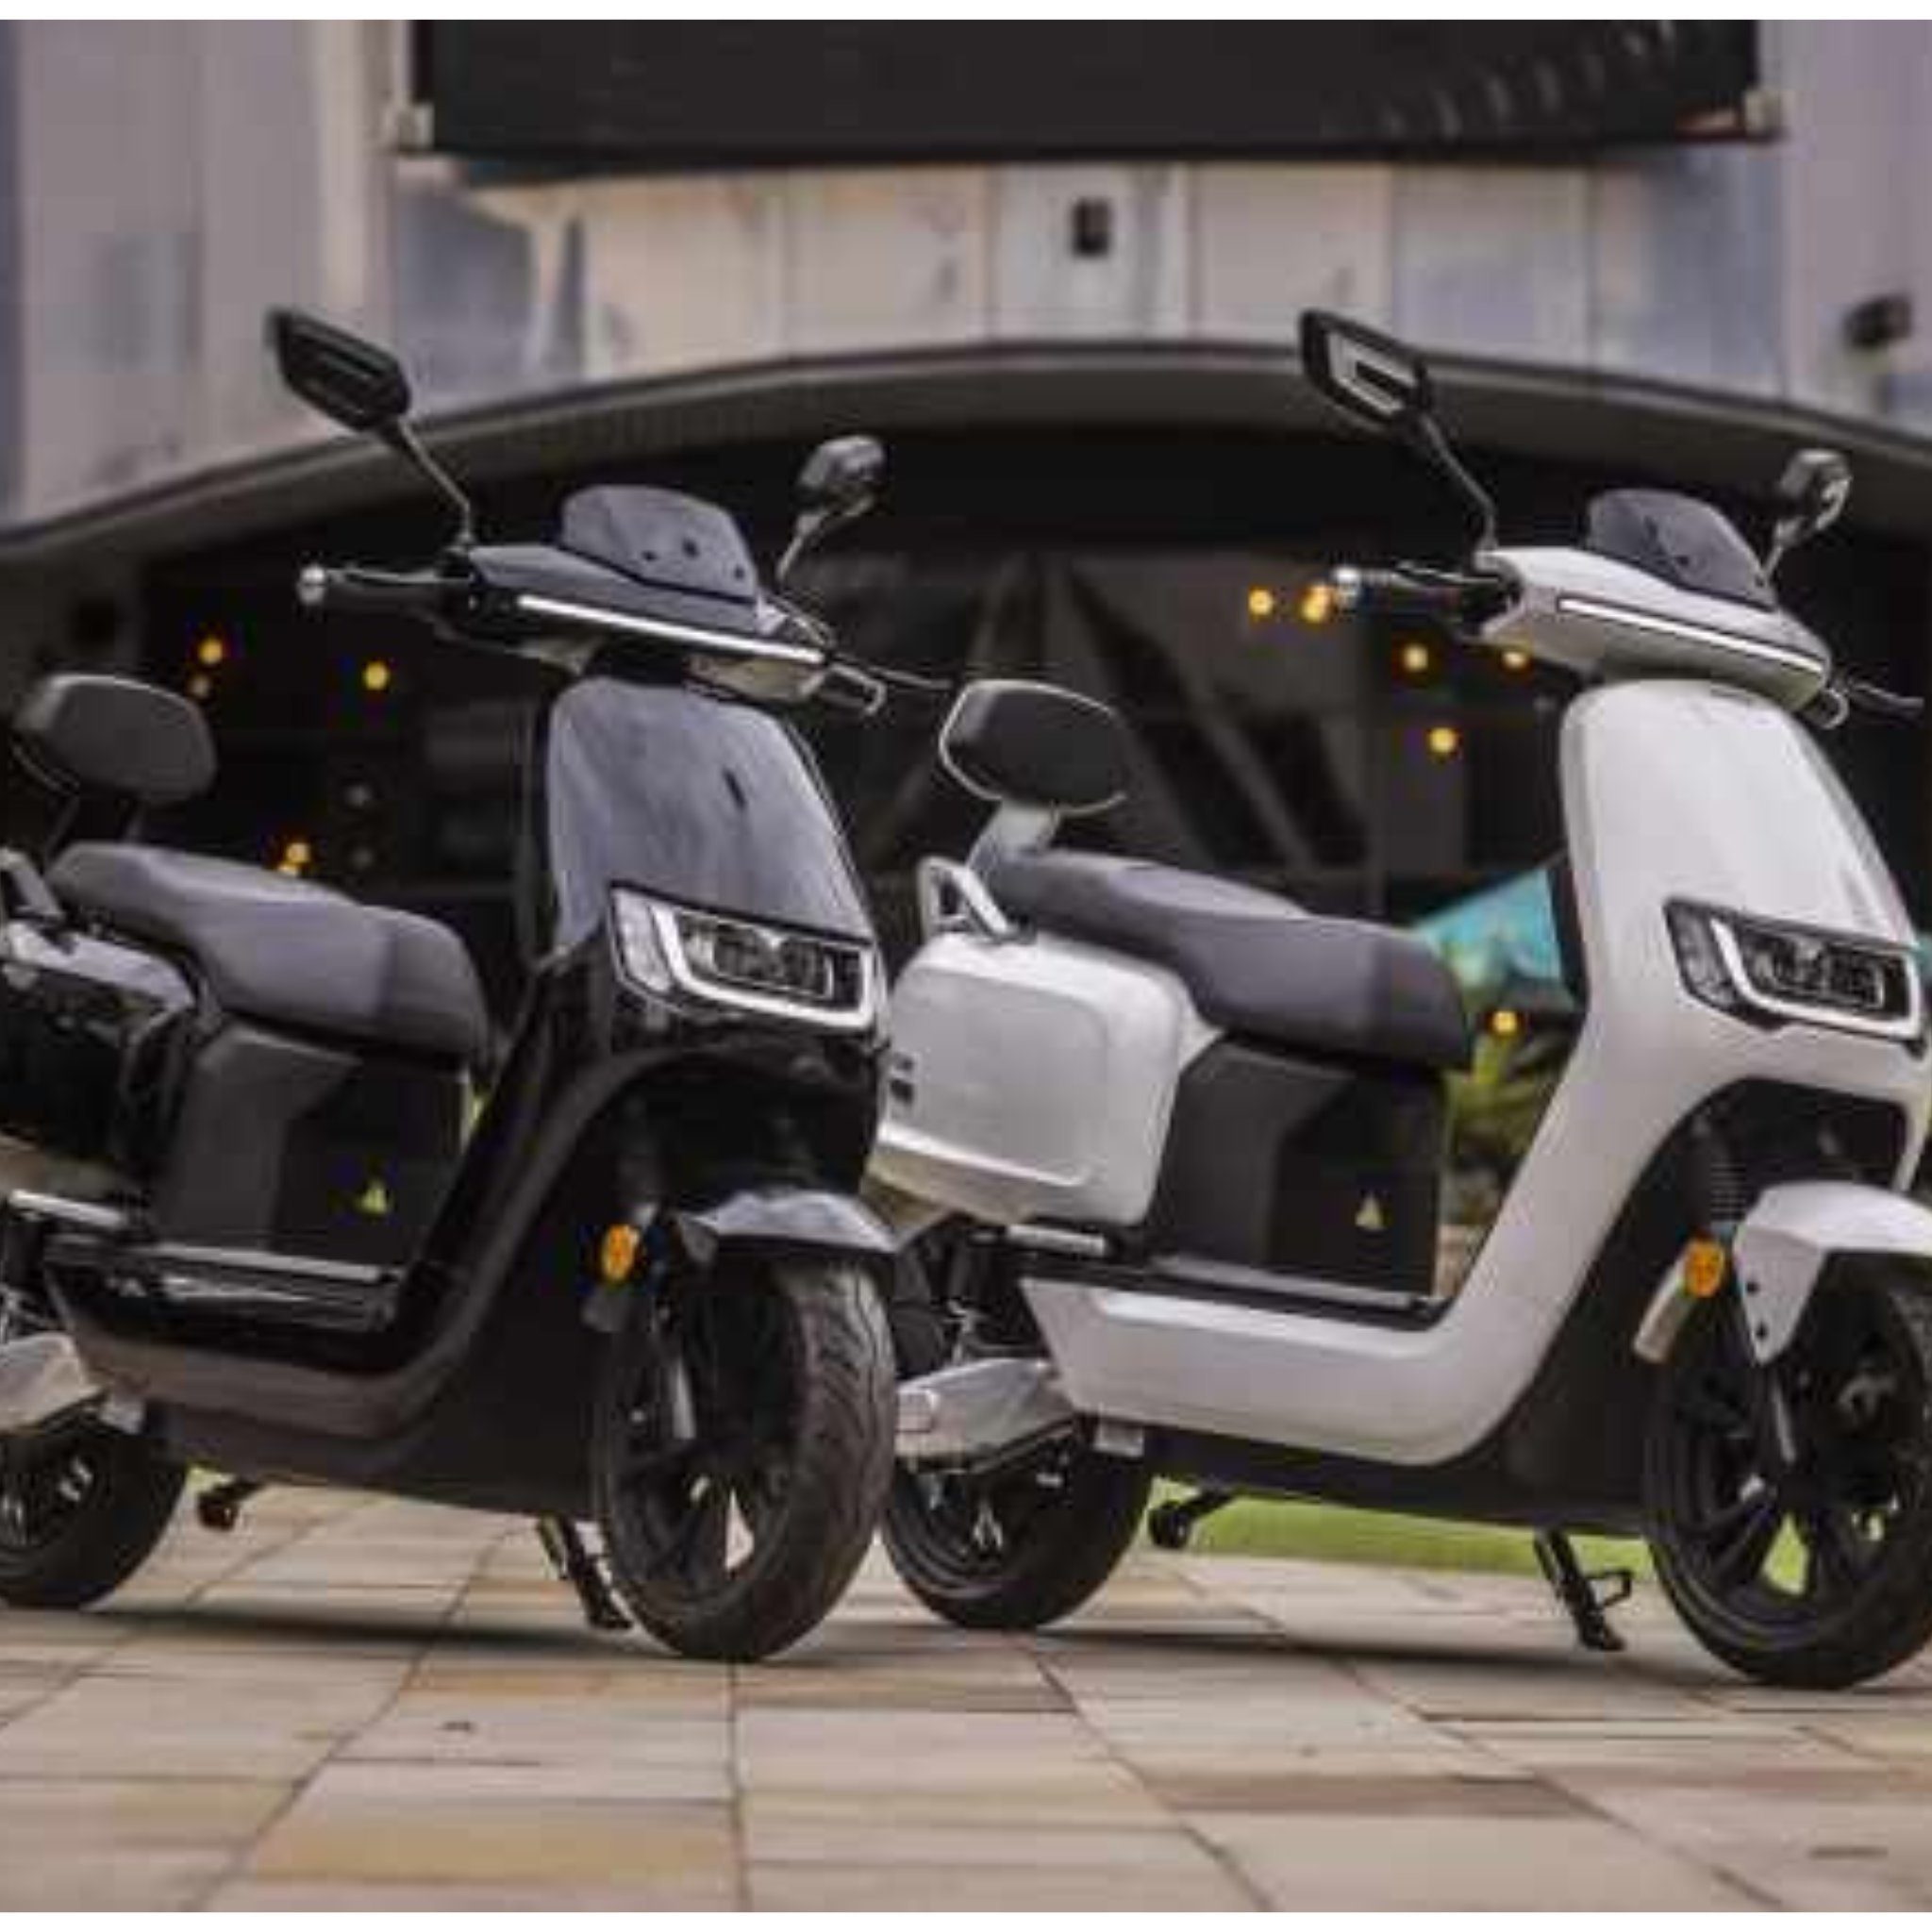 Stingray Motors E-Motorroller Elektroroller 80 Sunra - 80 km/h W, Schwarz E-Roller km/h - Robo 125cc, 4000,00 S